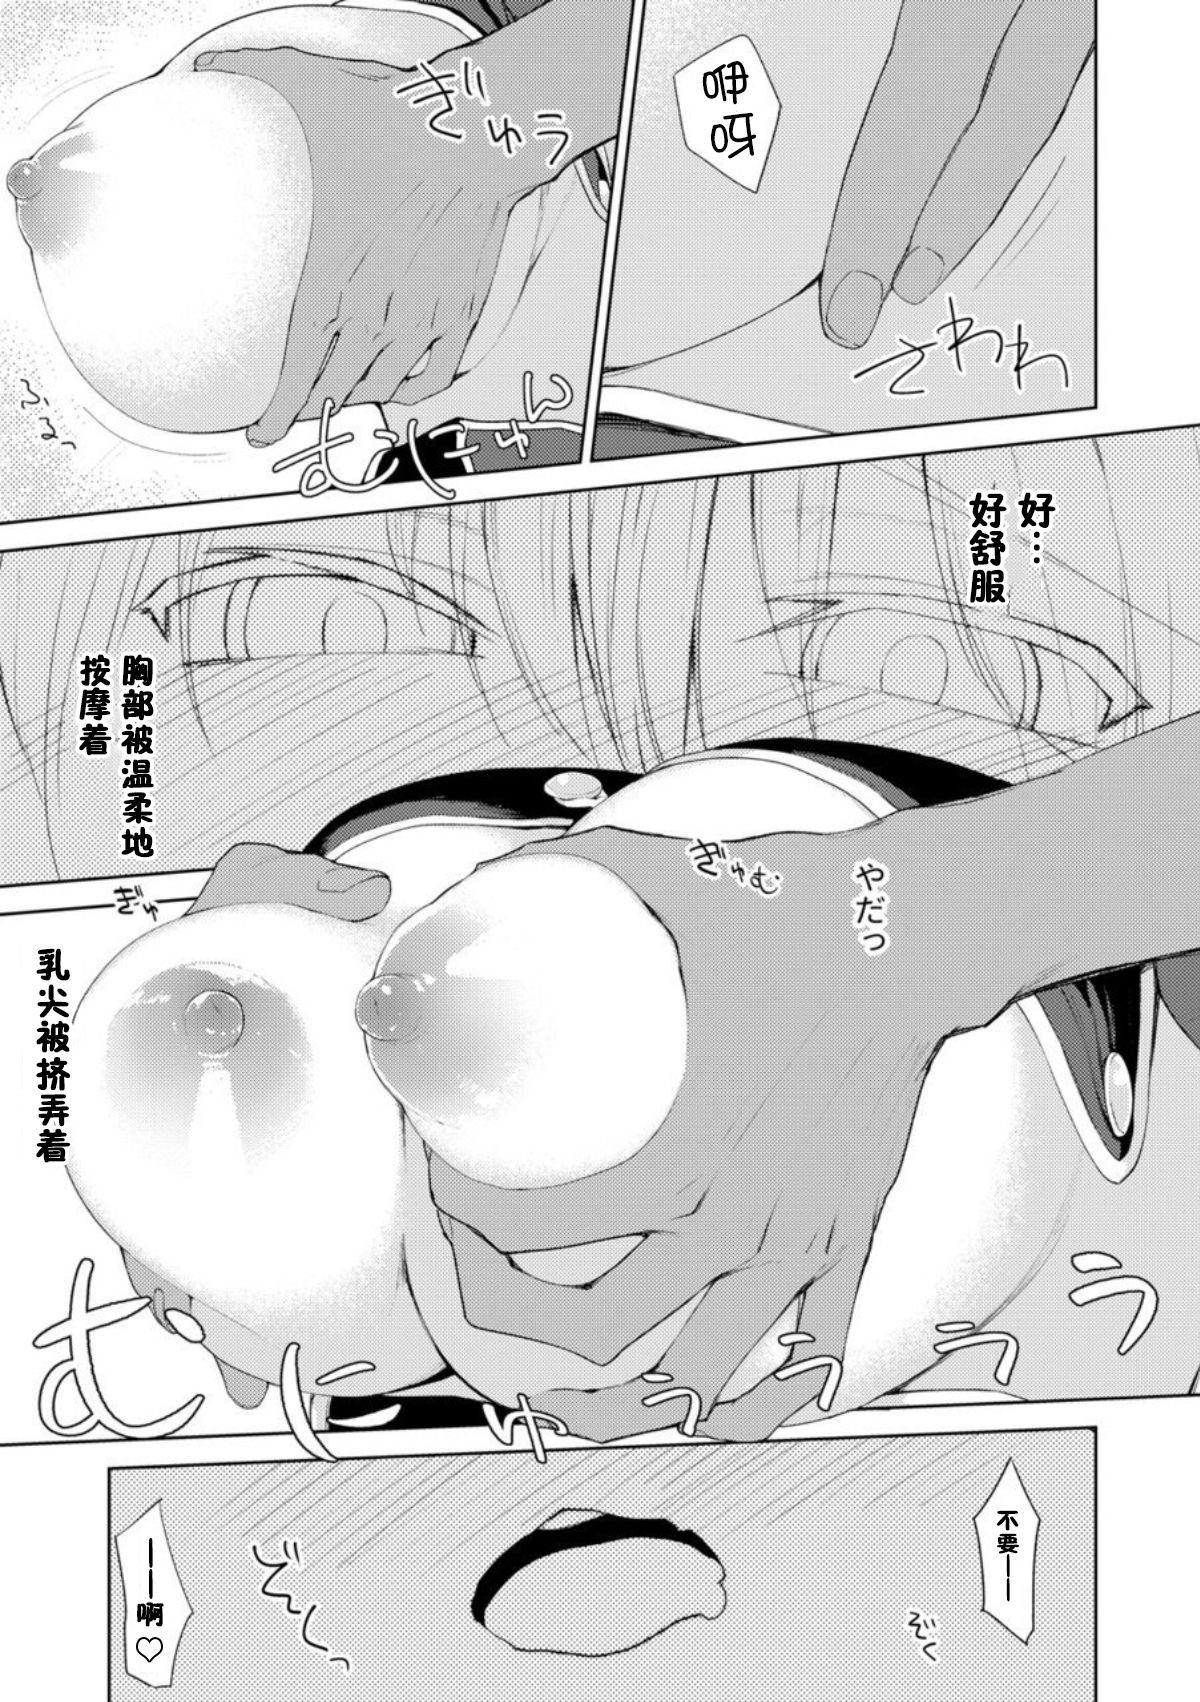 Strip Persis vs Oppai Seijin - Sennen sensou aigis Swinger - Page 10